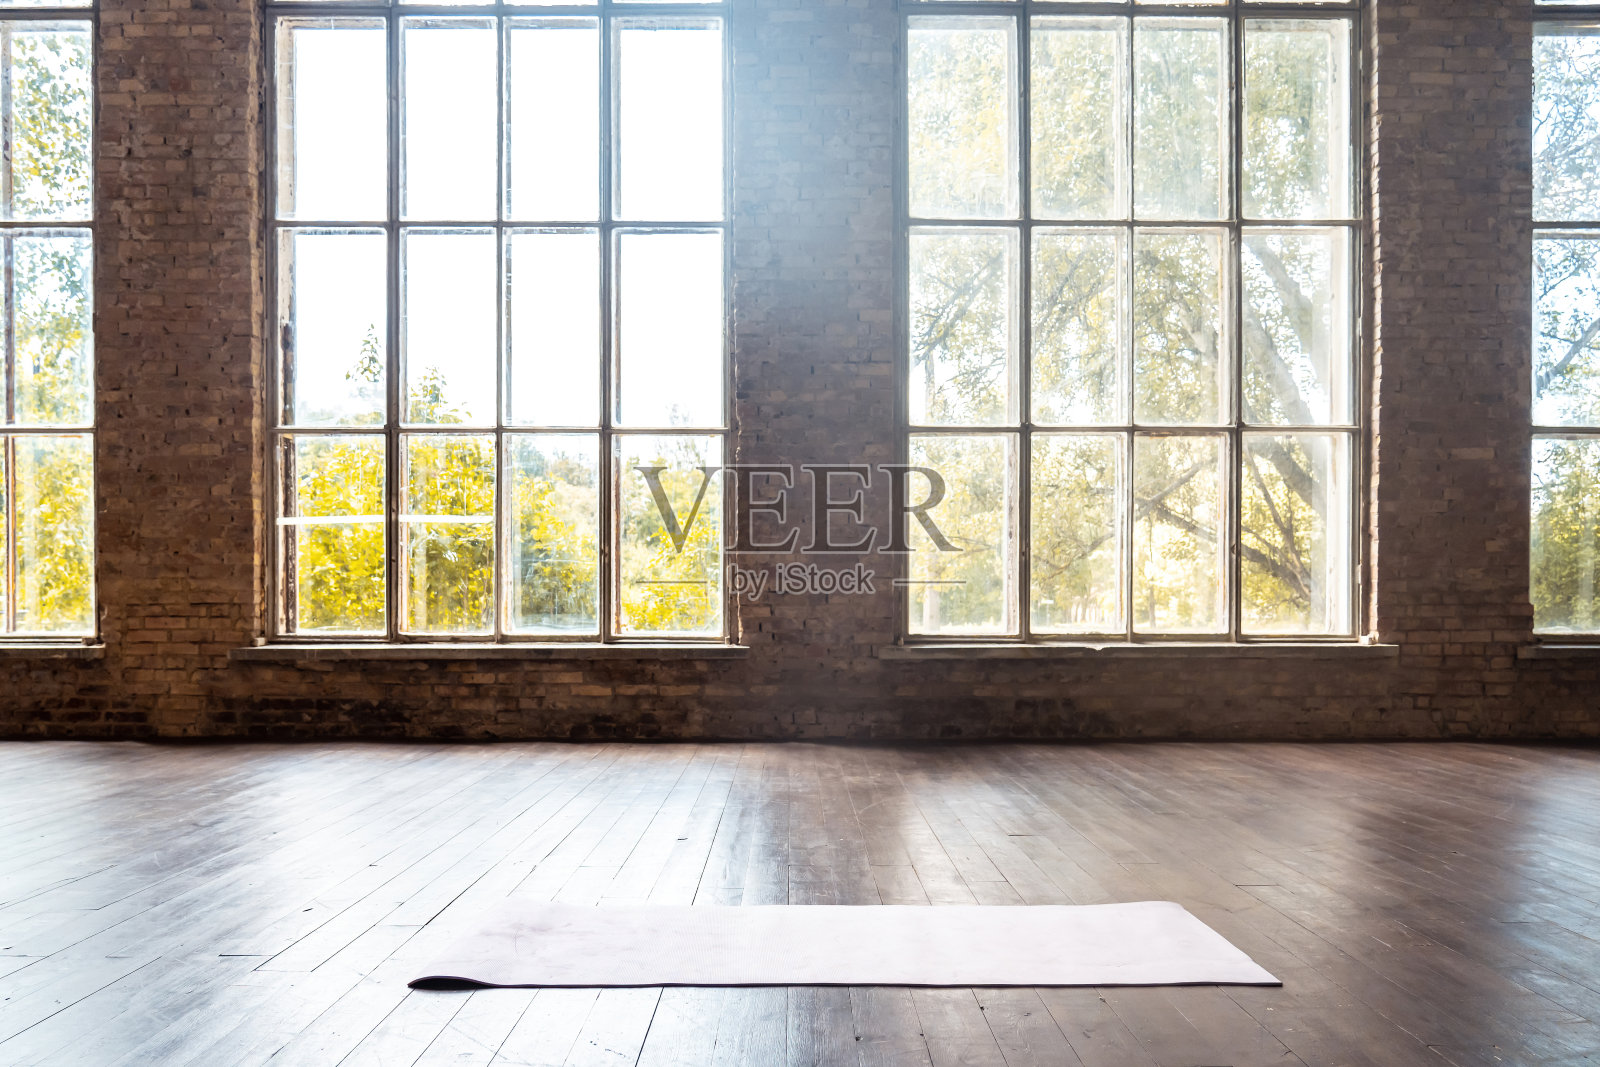 卷筒瑜伽普拉提橡胶垫在健身房内的健身房在木地板上运动锻炼健身俱乐部班训练锻炼设备在洁净室室内空间投标窗无人背景概念照片摄影图片